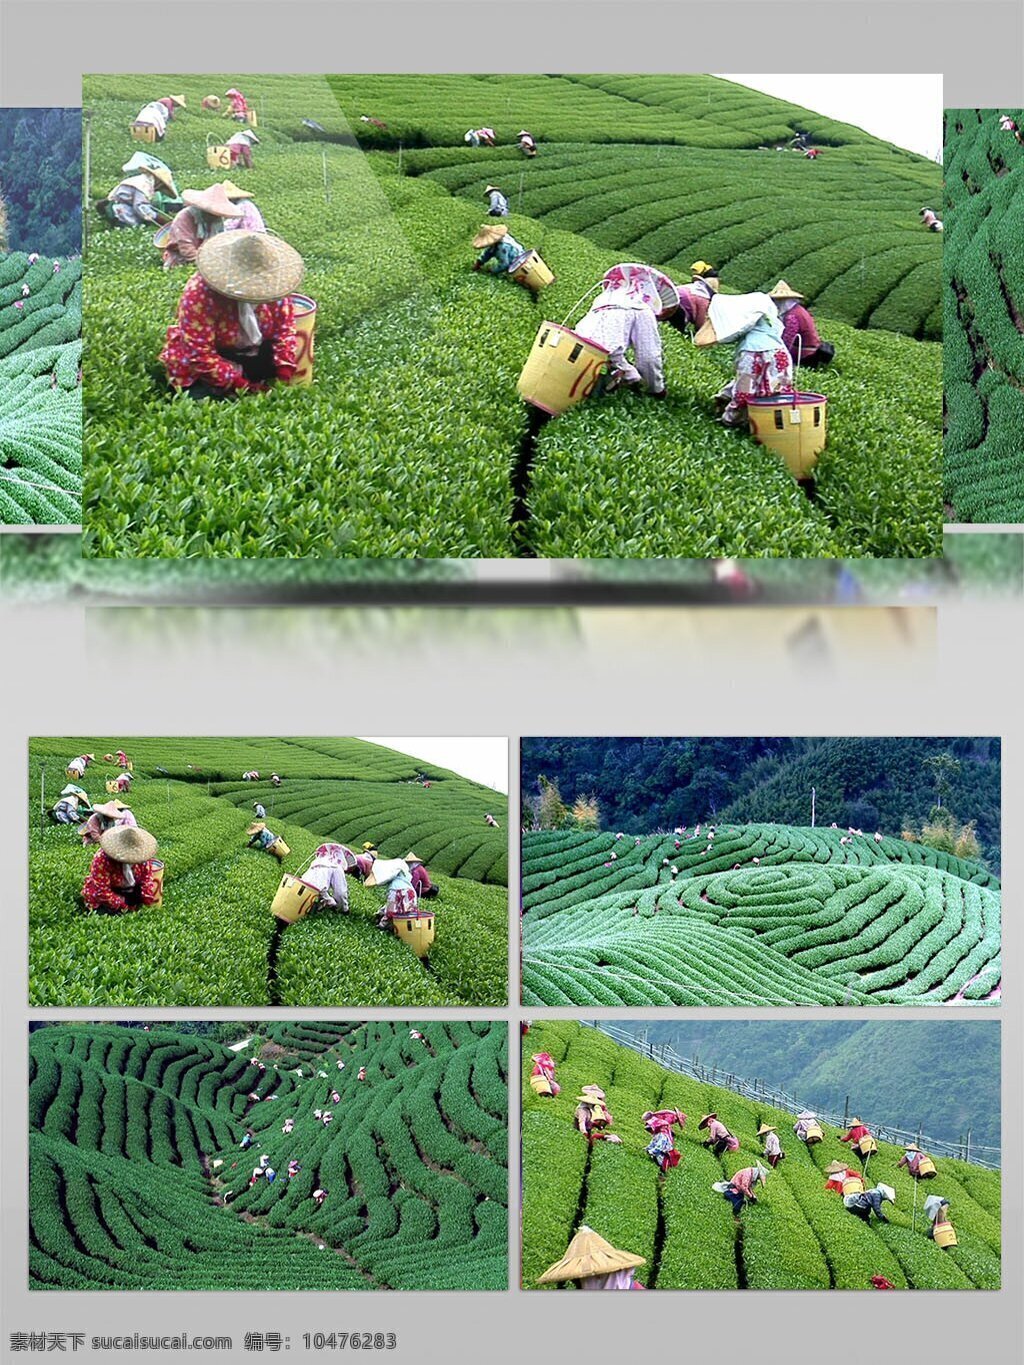 农村 种植 茶叶 采茶 视频 采集茶叶 乡村种植 茶园 农民